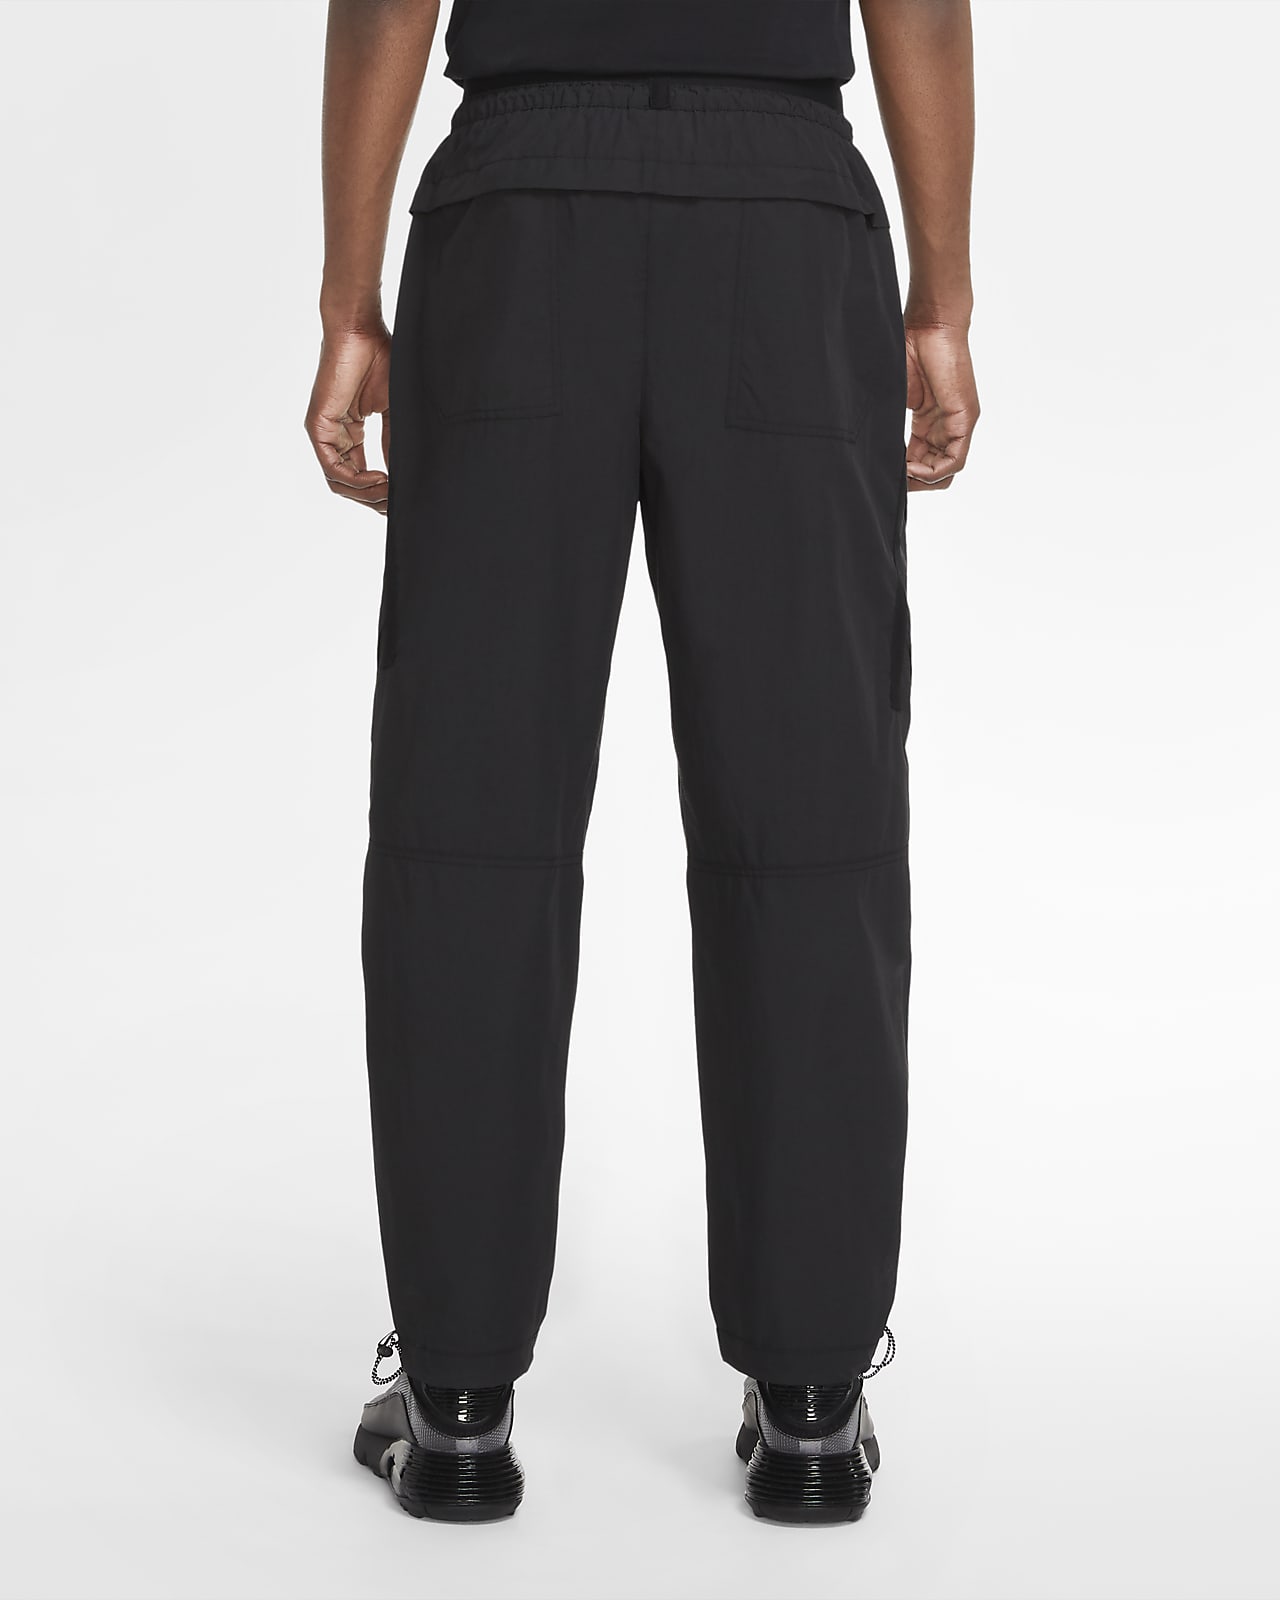 Nike Sportswear Tech Pack Men's Woven Pants